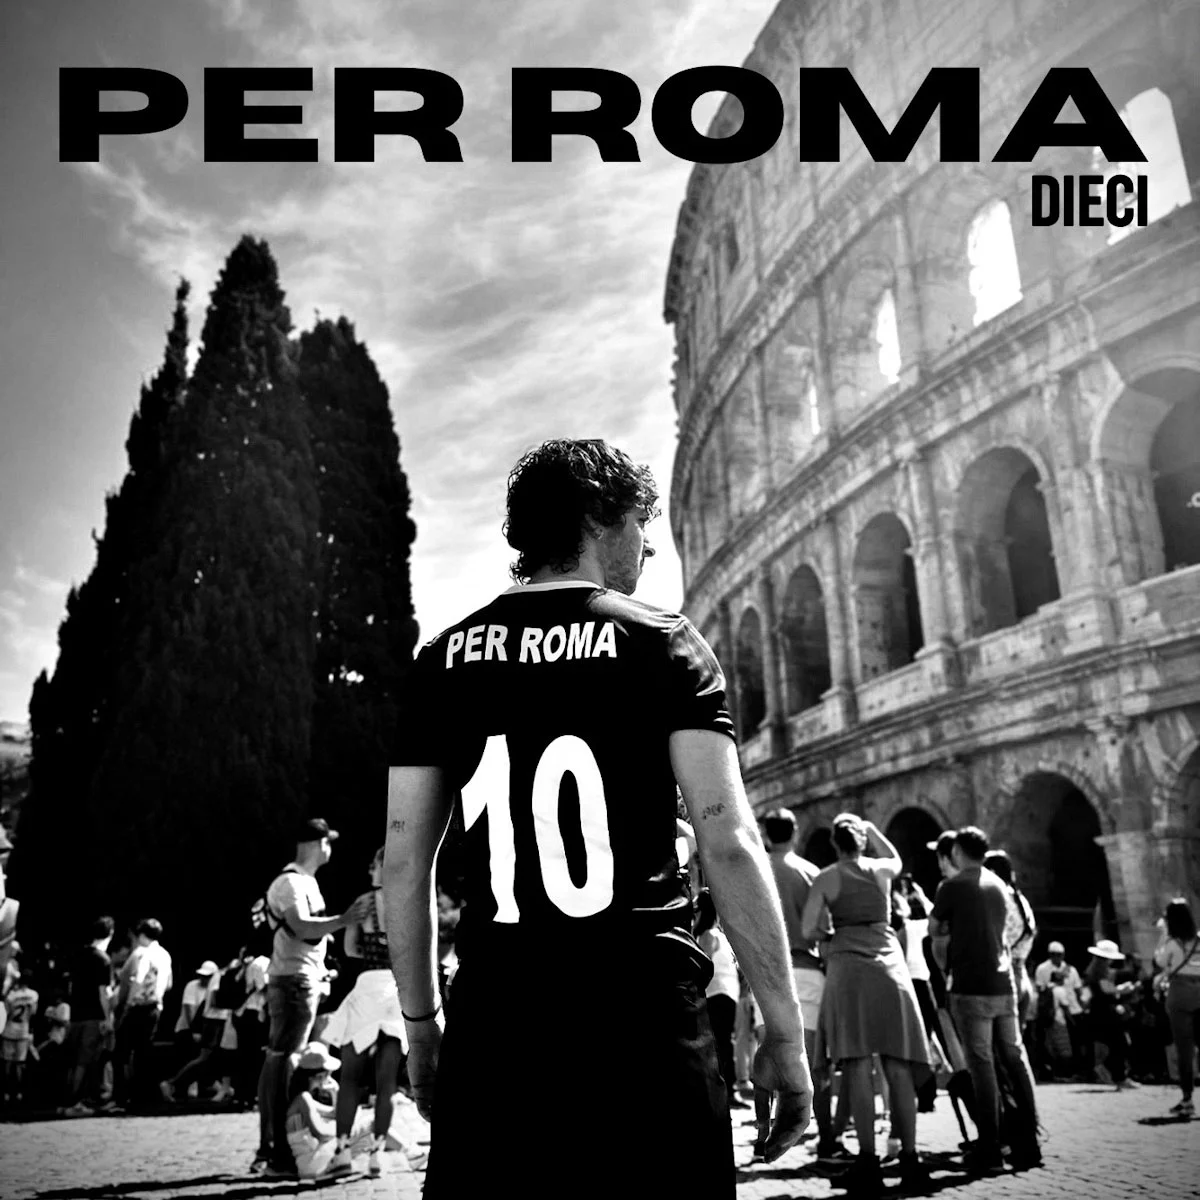 DIECI è in radio dal 5 luglio con PER ROMA